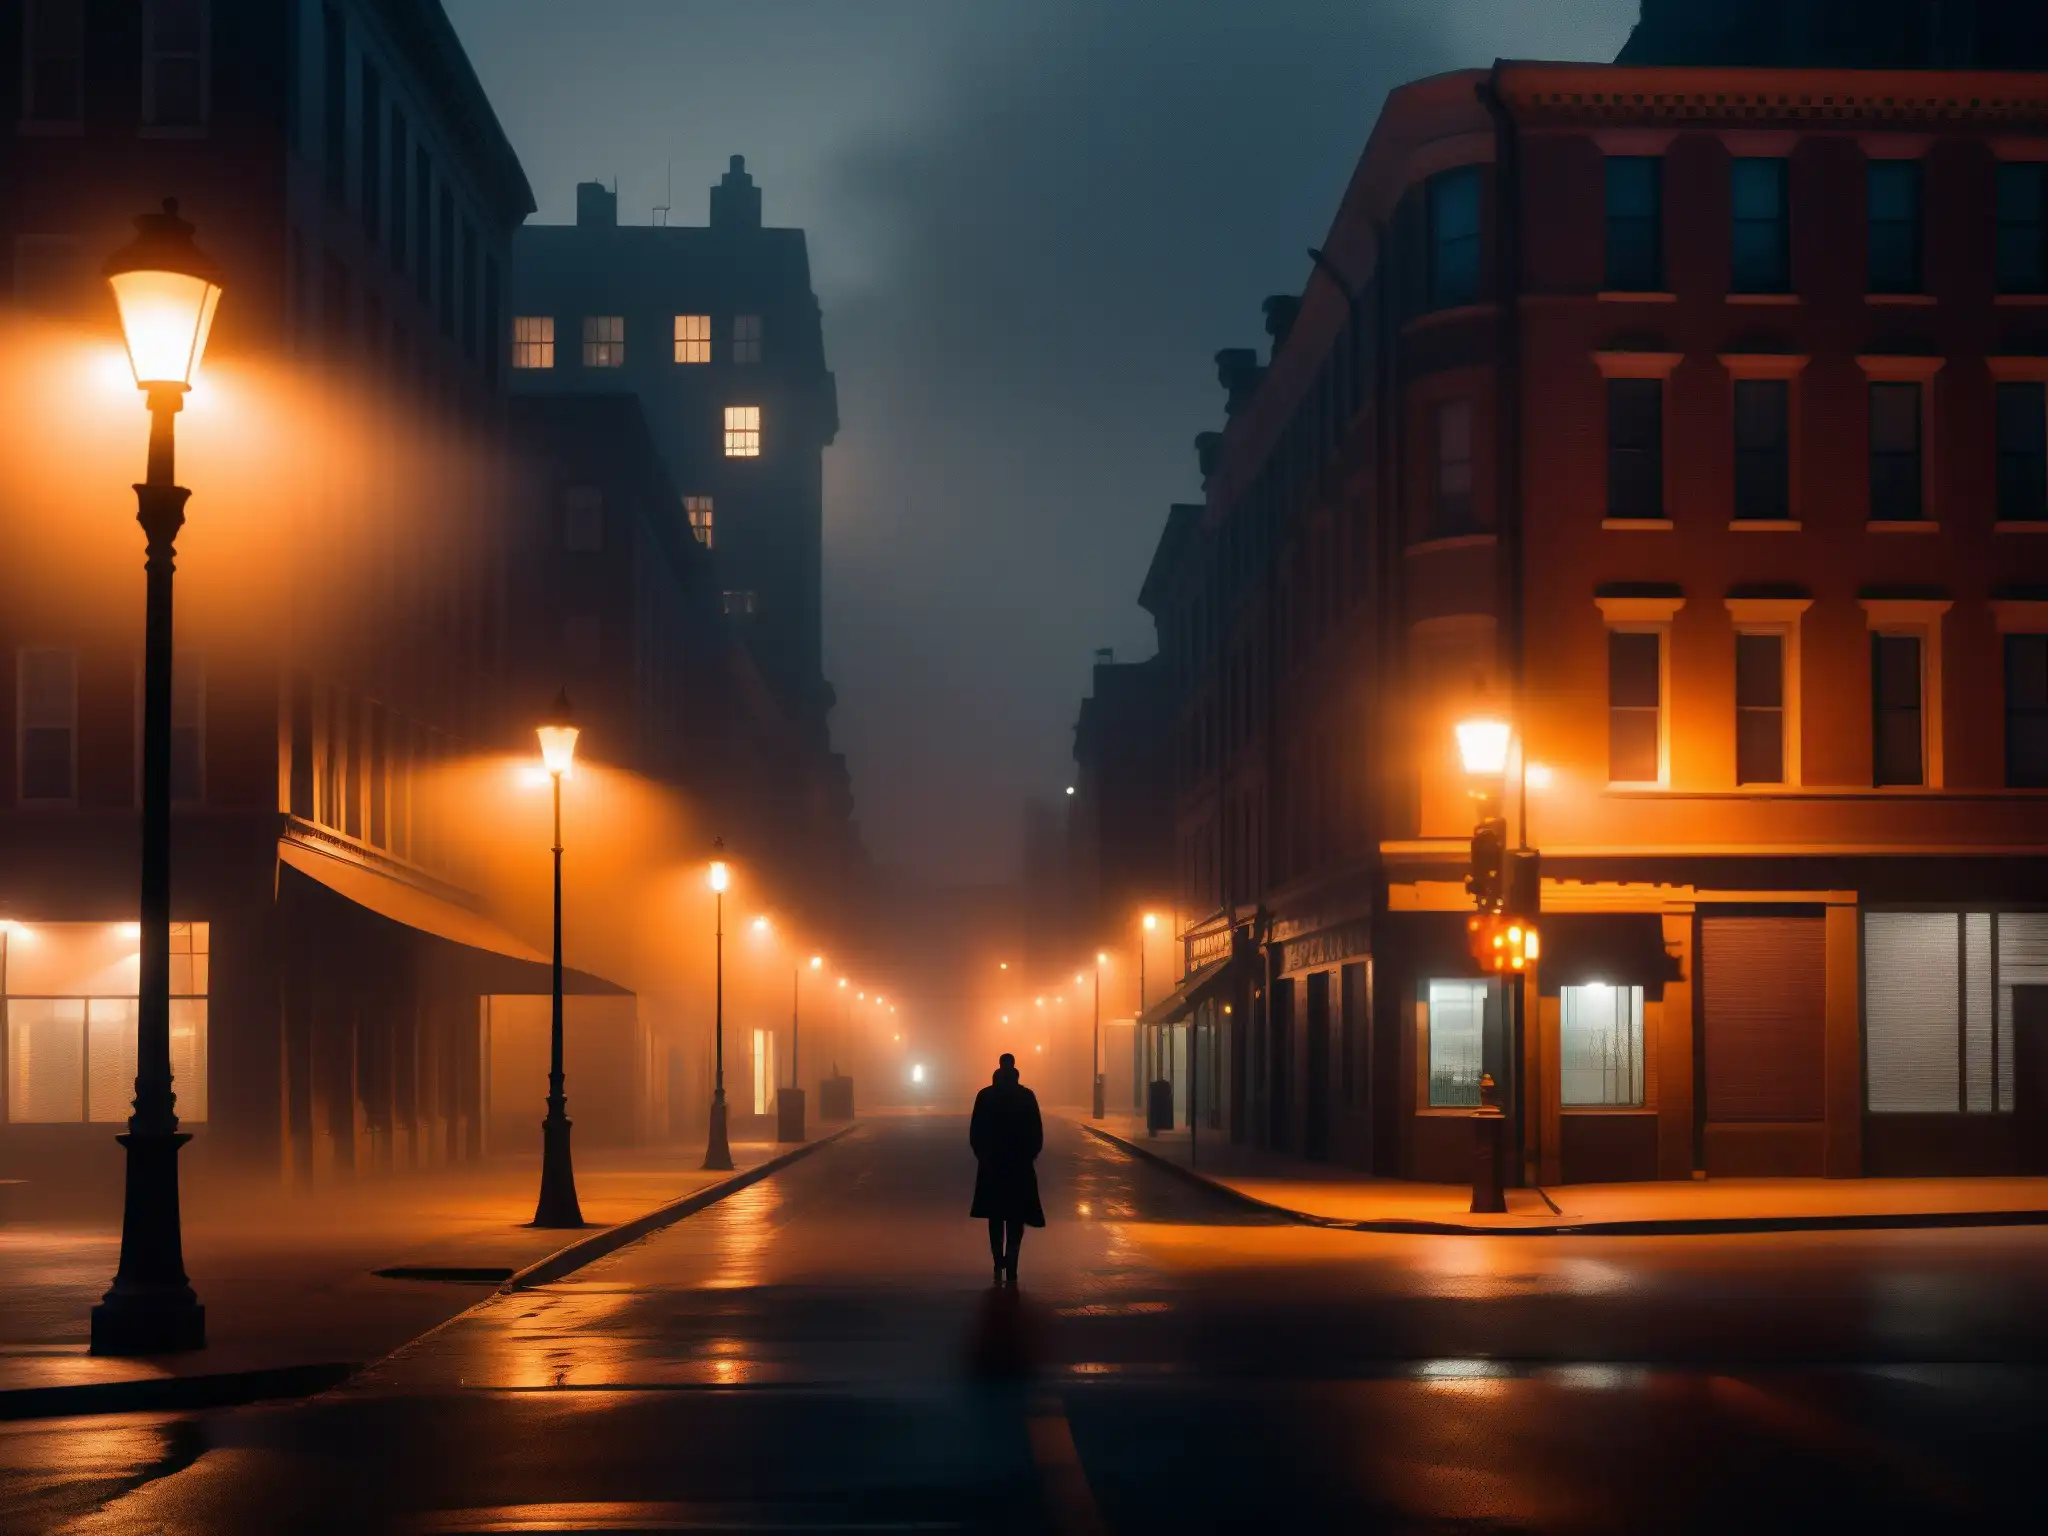 Una solitaria figura camina en una calle oscura y neblinosa de la ciudad, con una atmósfera de misterio y ansiedad social